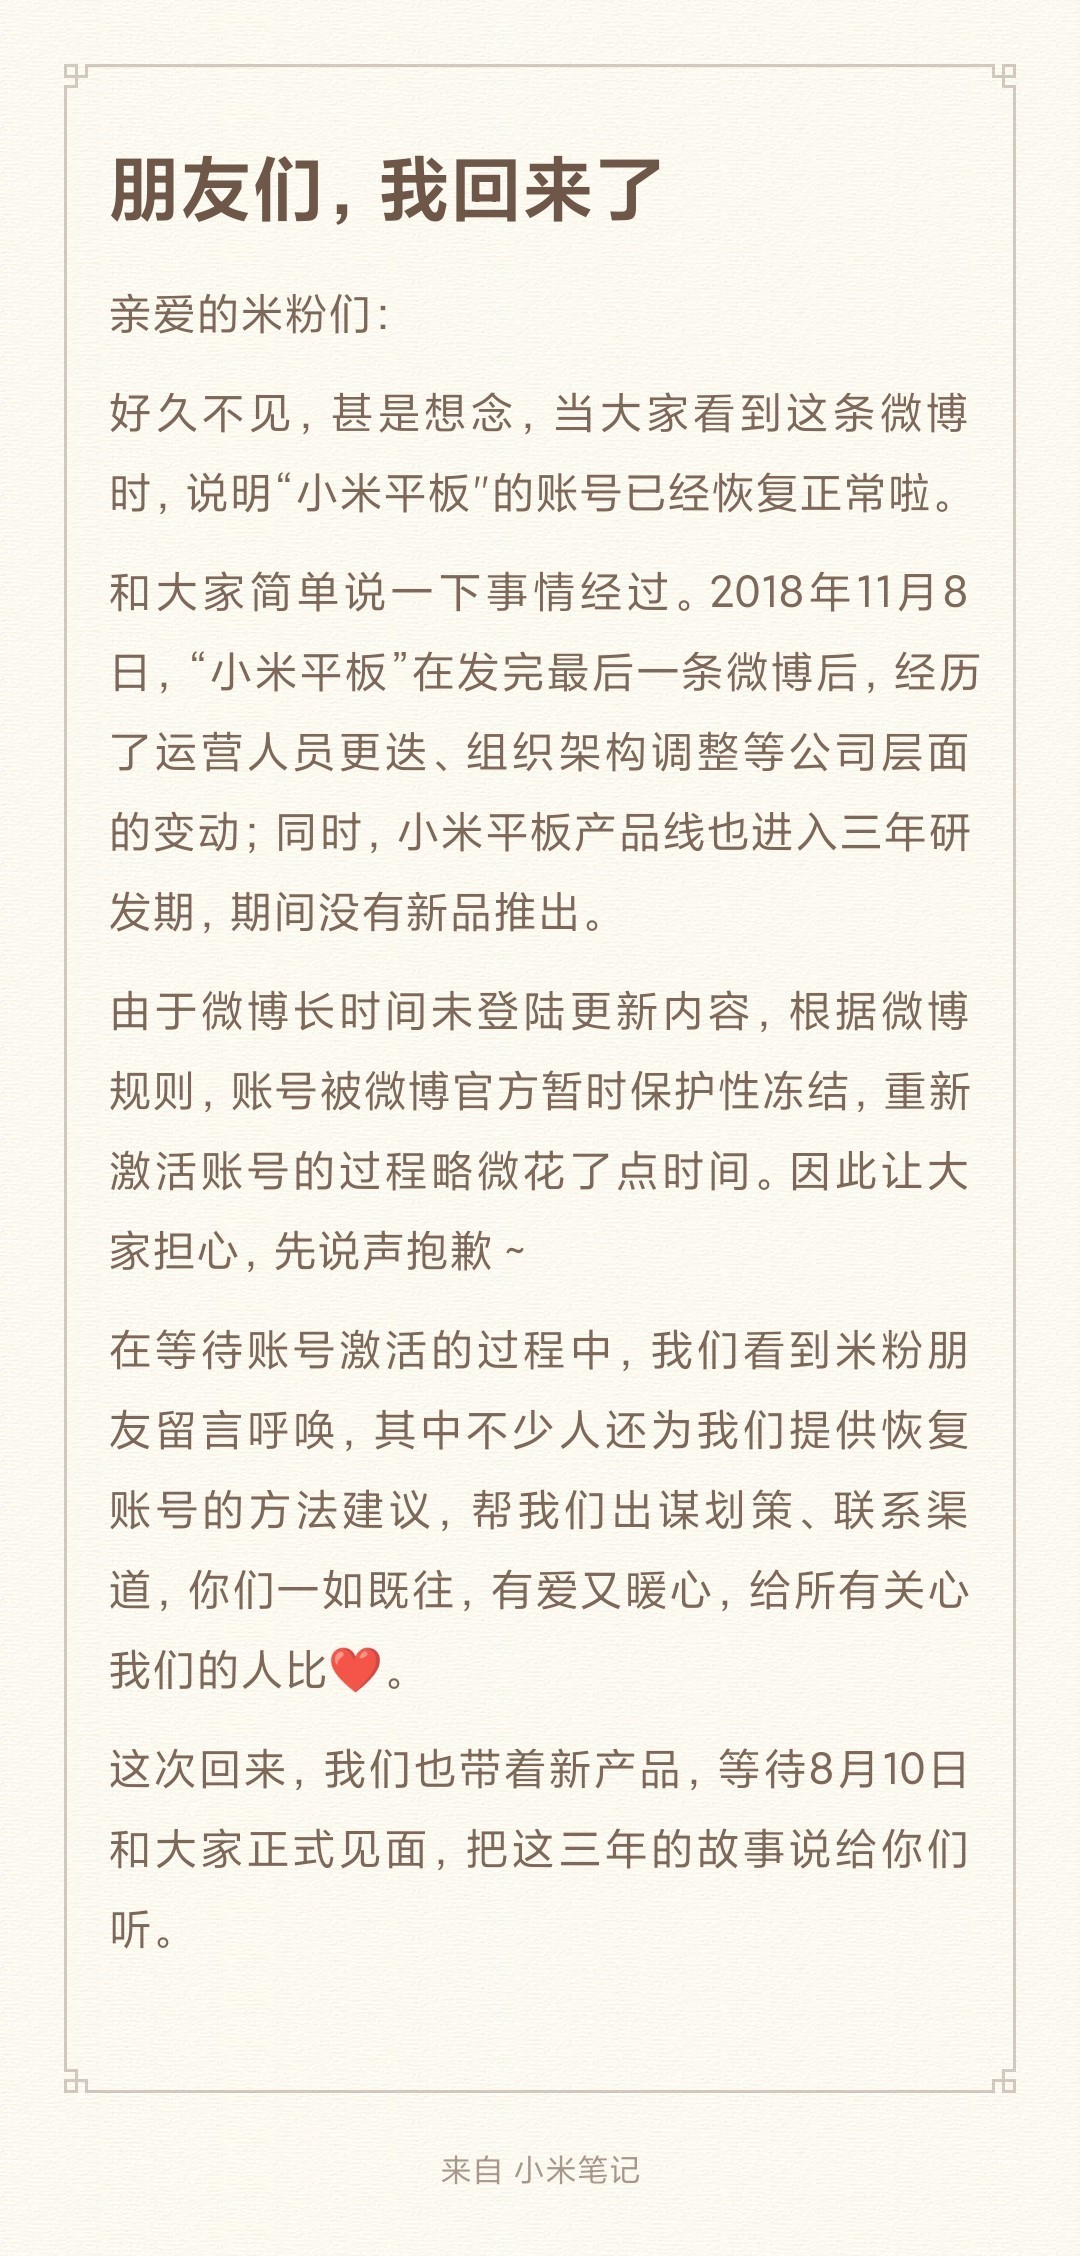 小米平板官方微博账号恢复更新，为近三年来首次。 - itotii